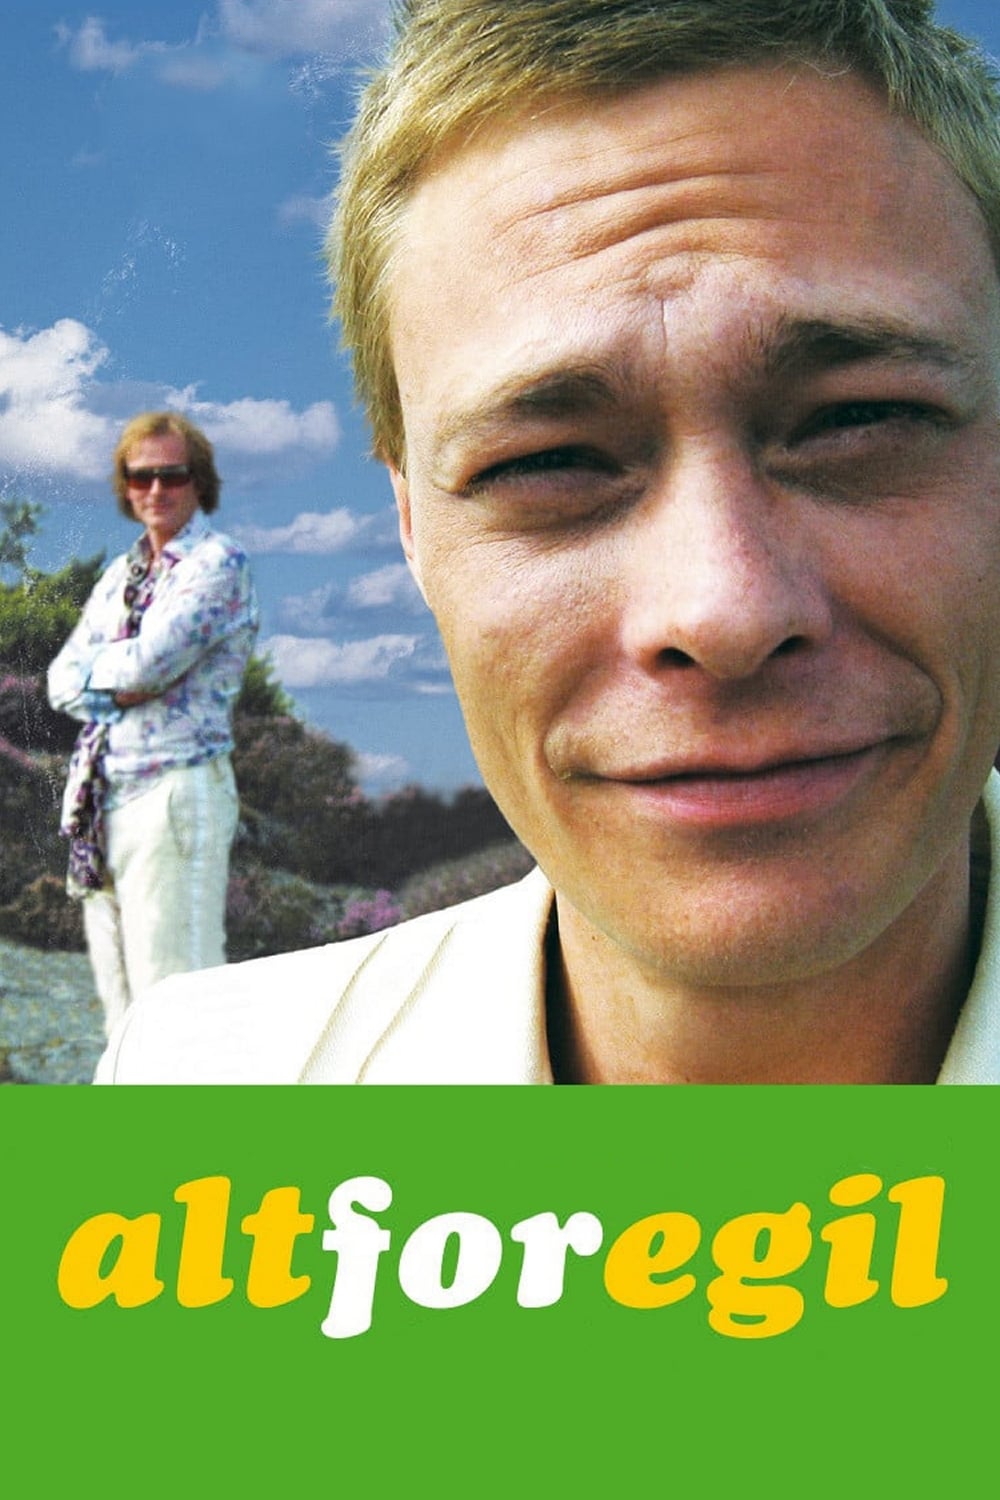 Alt for Egil (2004)